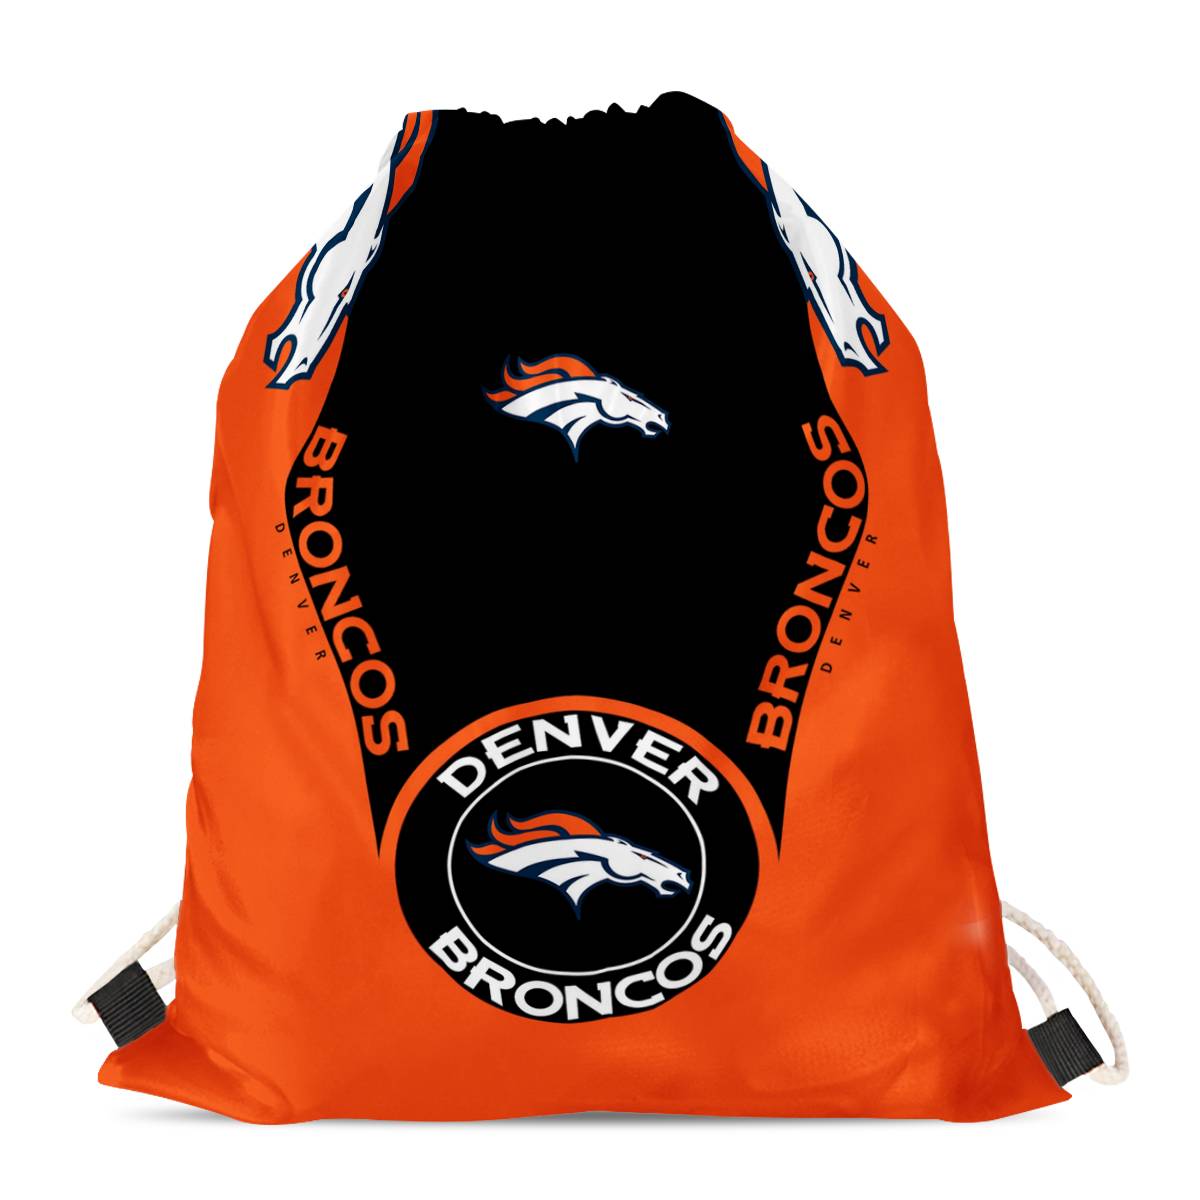 Denver Broncos Drawstring Backpack sack / Gym bag 18" x 14" 001